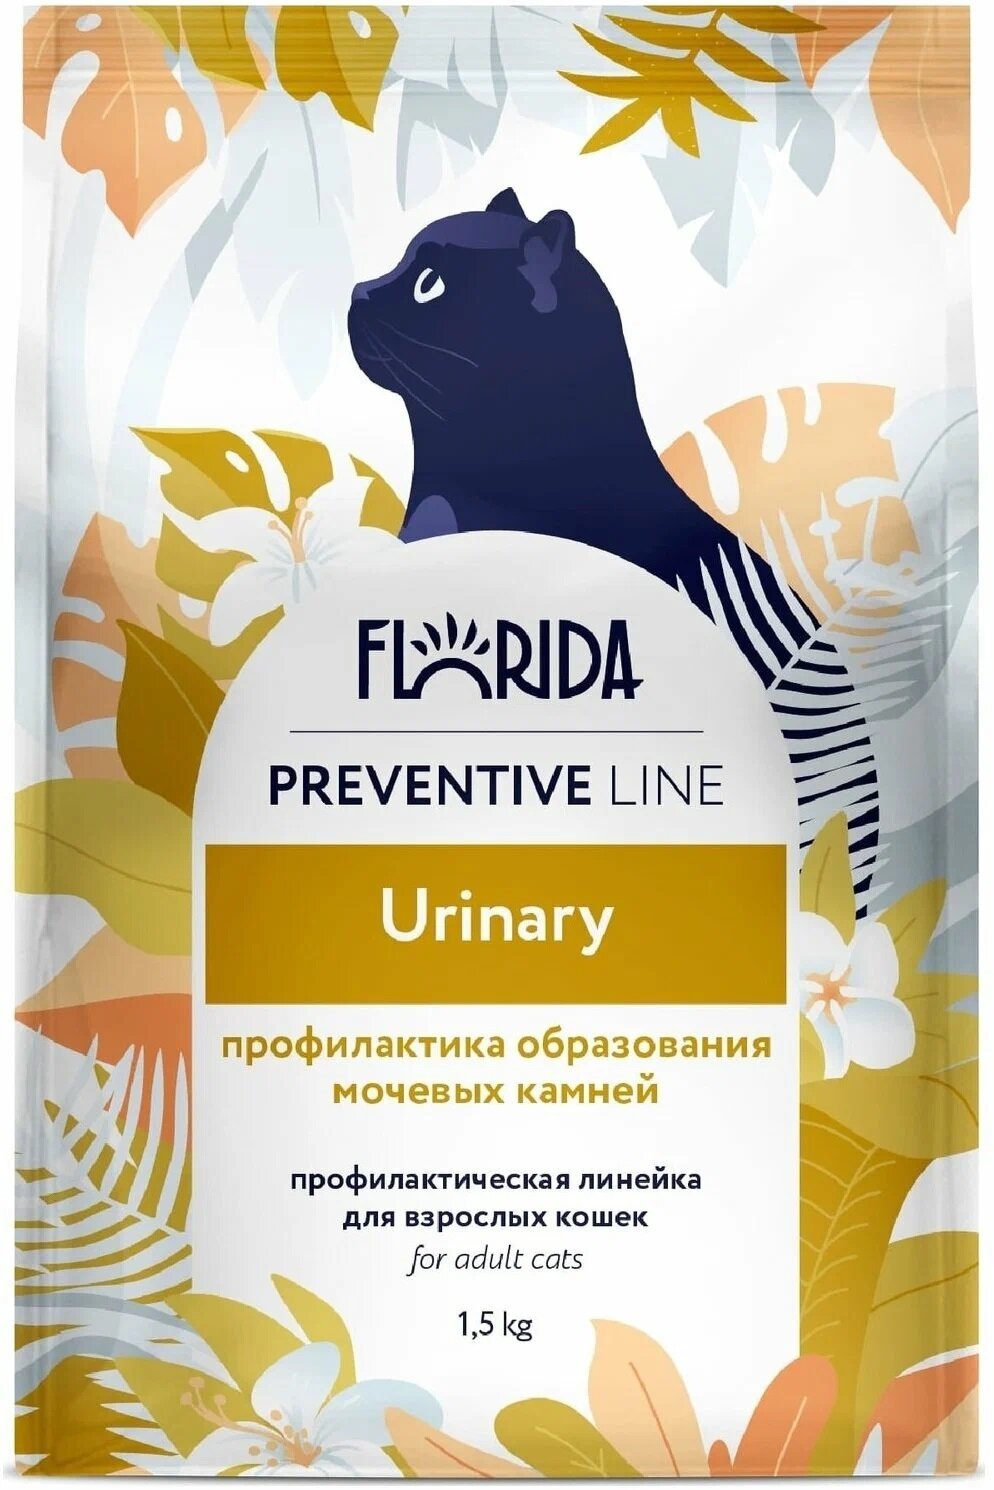 FLORIDA Сухой корм для кошек профилактическая линия, Preventive Line urinary, профилактика образования мочевых камней, с курицей, 1,5 кг.